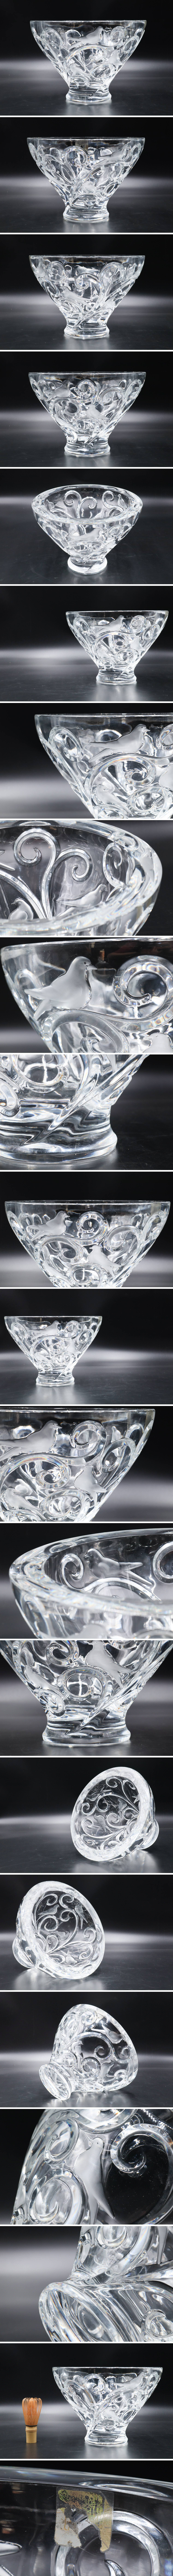 【信頼】百貨店購入 LALIQUE ラリック 鳥彫刻花入 特大 約28cm クリスタルガラス 花瓶 花器 5S25.50D クリスタルガラス